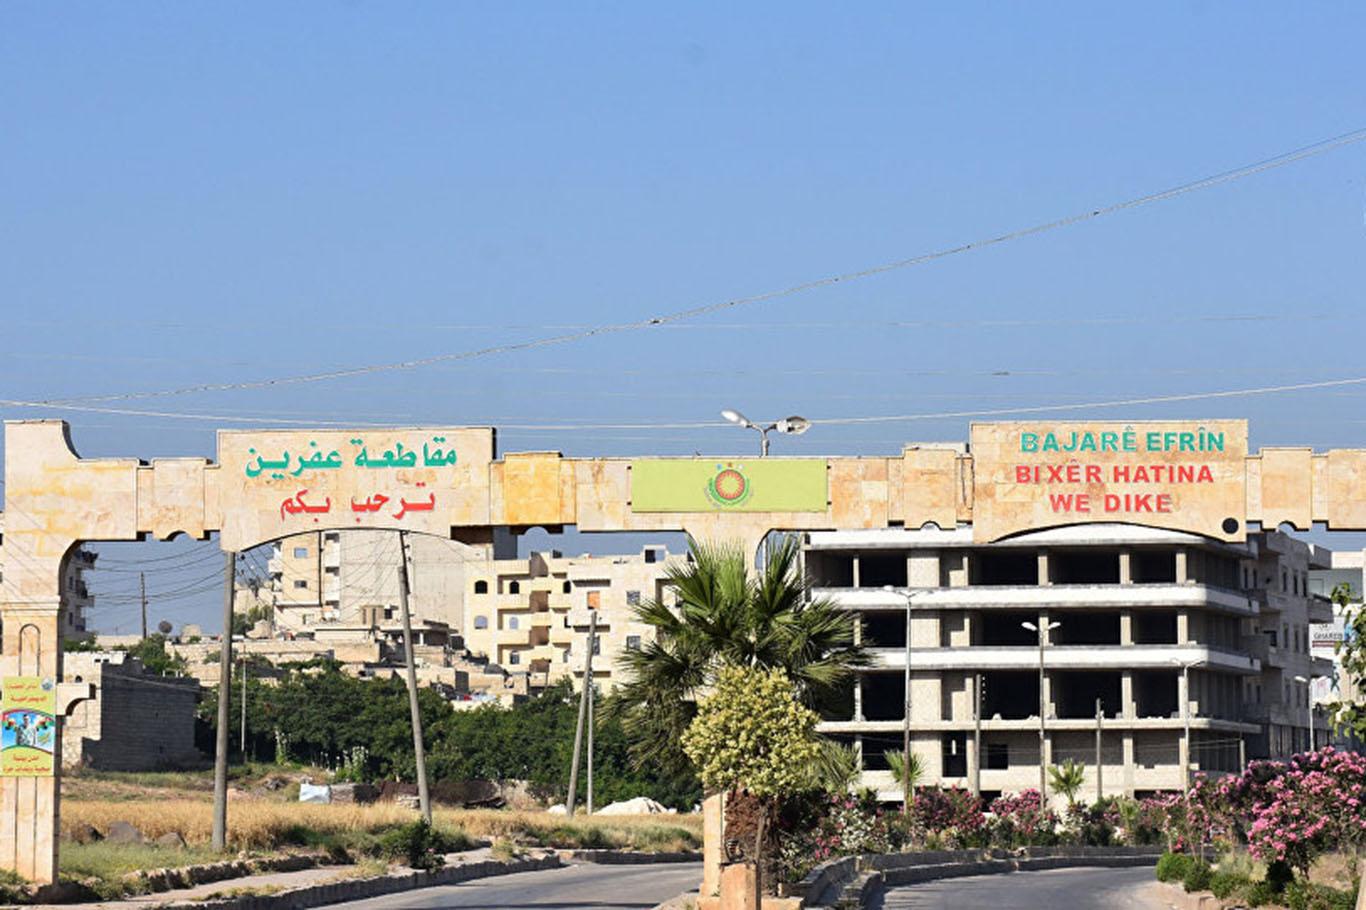 Afrin'de geçici yerel meclis kuruldu